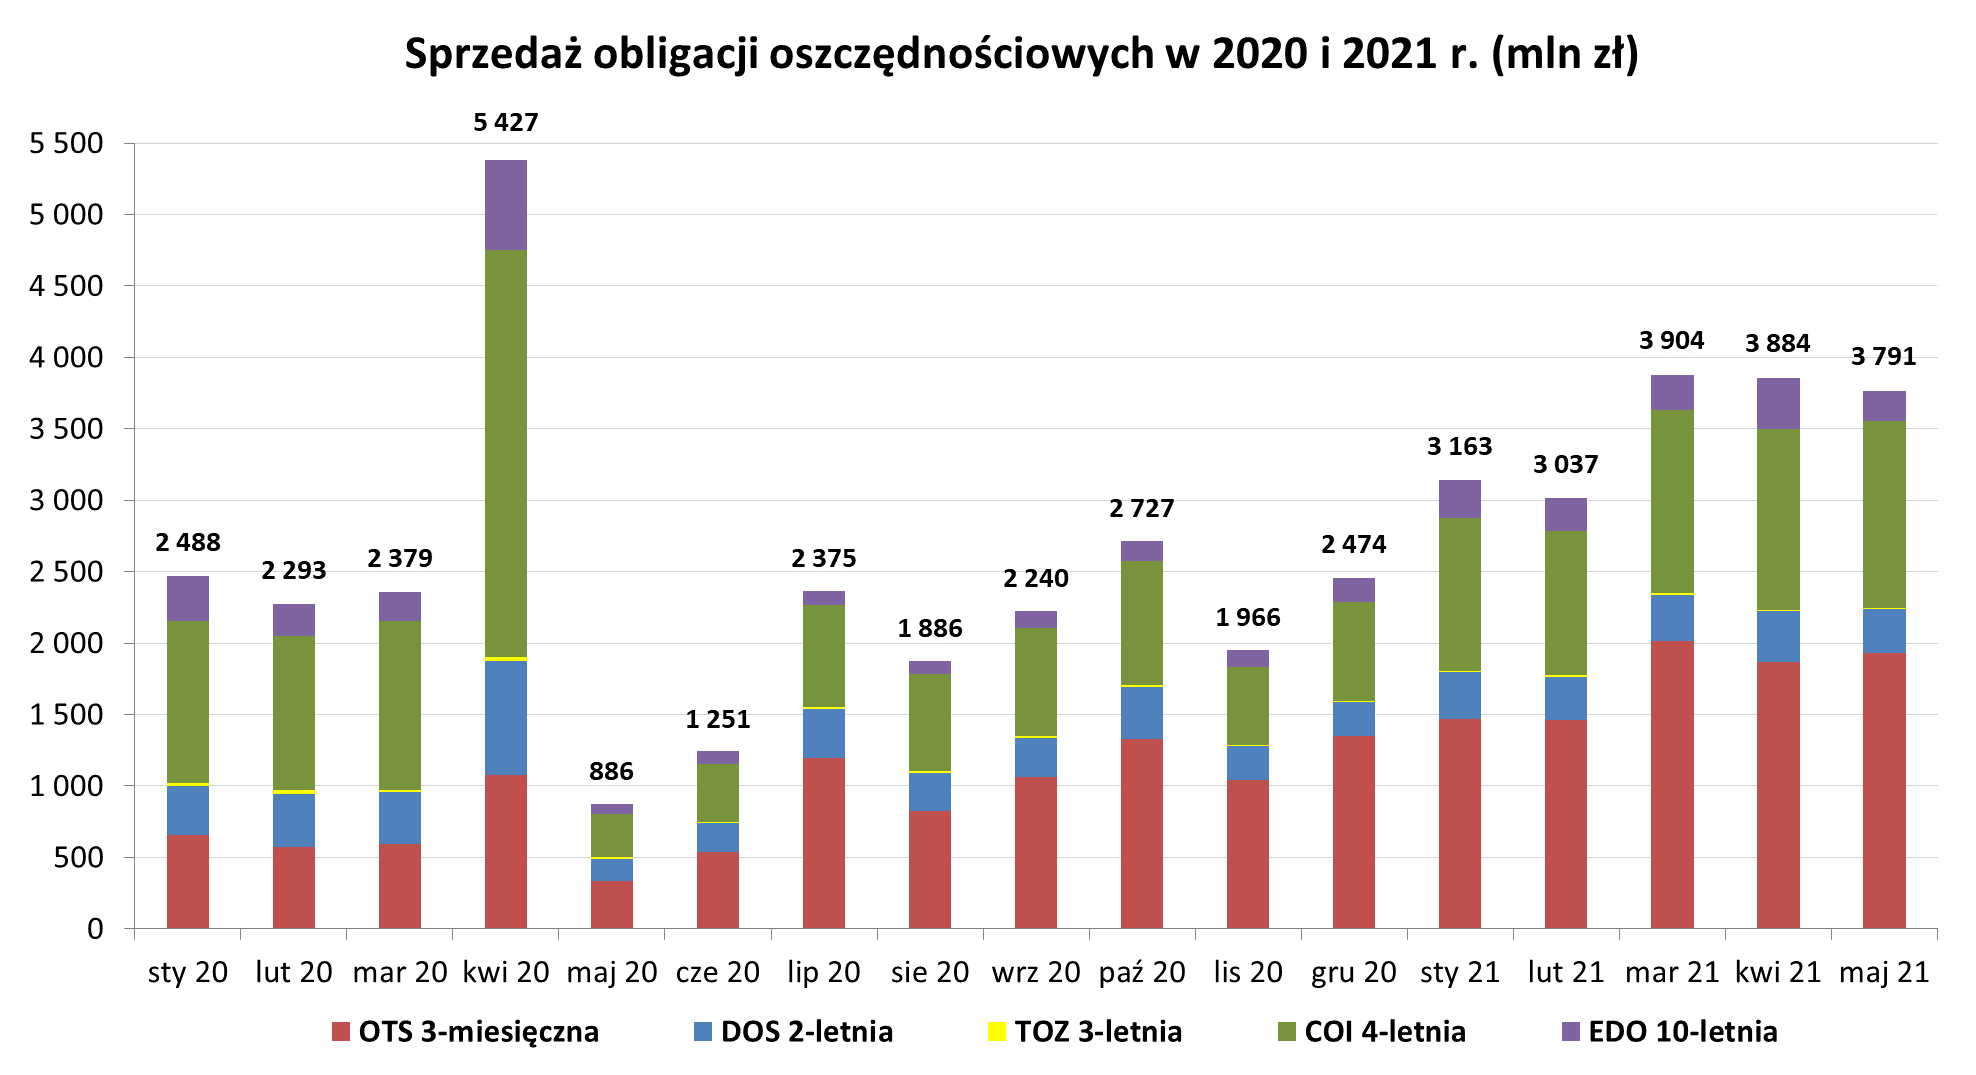 Wykres słupkowy przedstawiający sprzedaż obligacji oszczędnościowych w 2020 i 2021 r. (mln zł) w maju